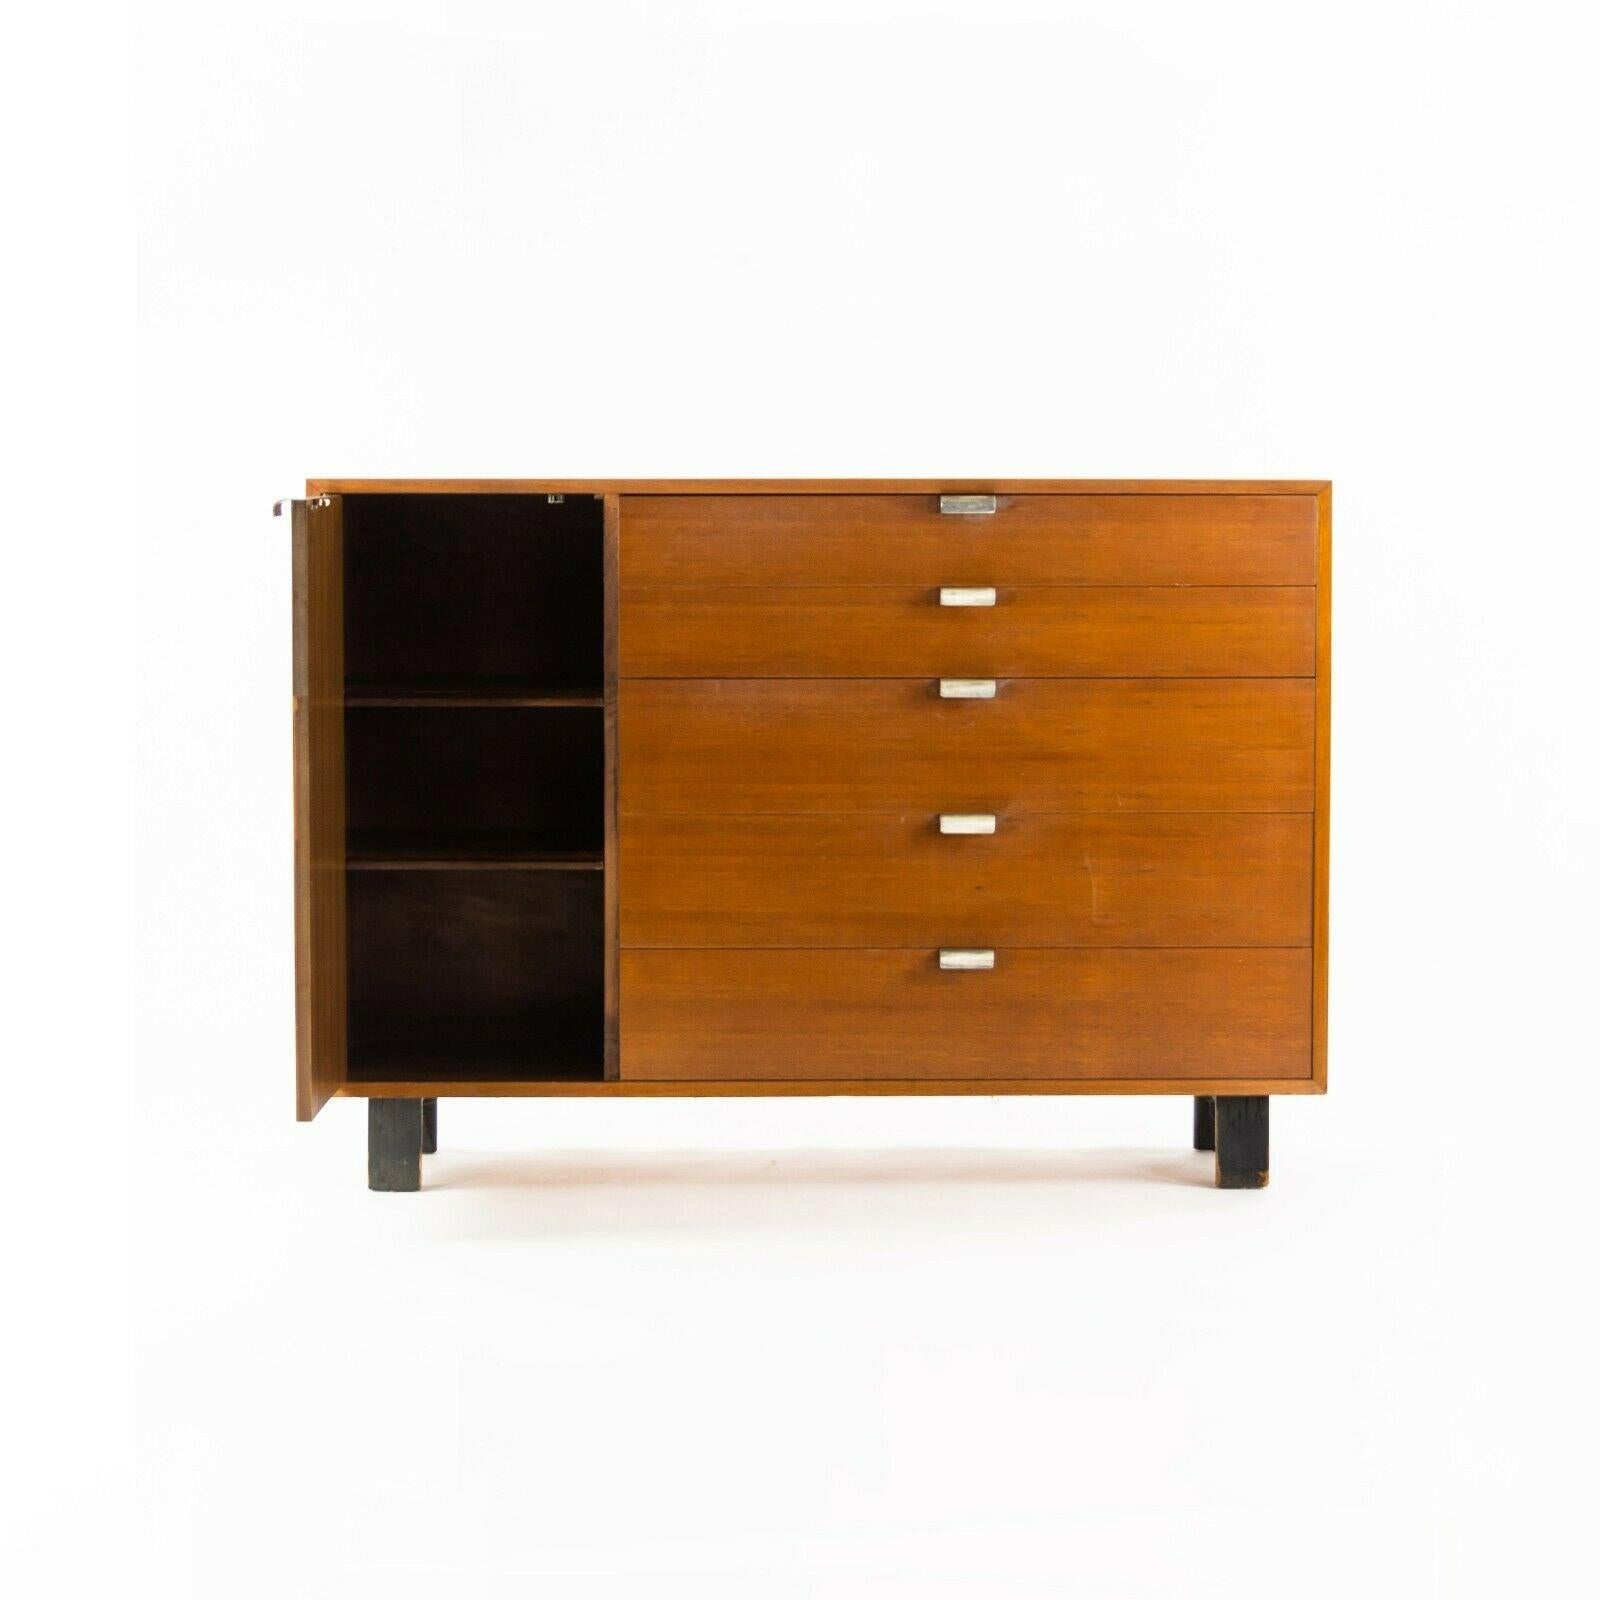 Nous proposons à la vente une commode/crédence à 5 tiroirs de la série Basic Cabinet, modèle 4936 de George Nelson pour Herman Miller, datant d'environ 1954. Il s'agit d'une pièce délicieusement originale. L'état général est très bon, voire